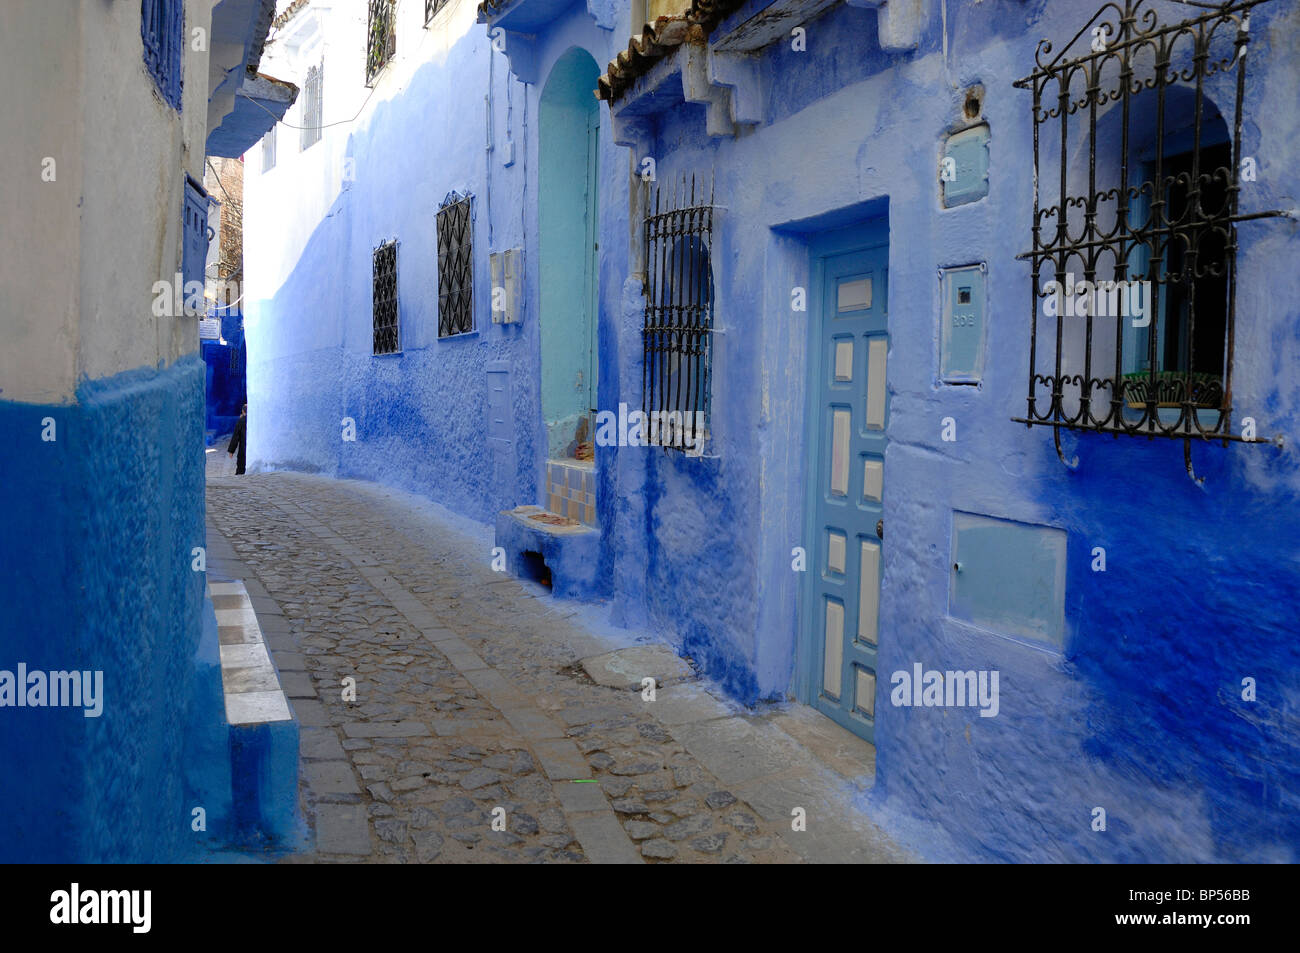 Blaue Straße, blaue Häuser, Kopfsteinpflaster & blauen Türen, Chefchaouen, Marokko Stockfoto